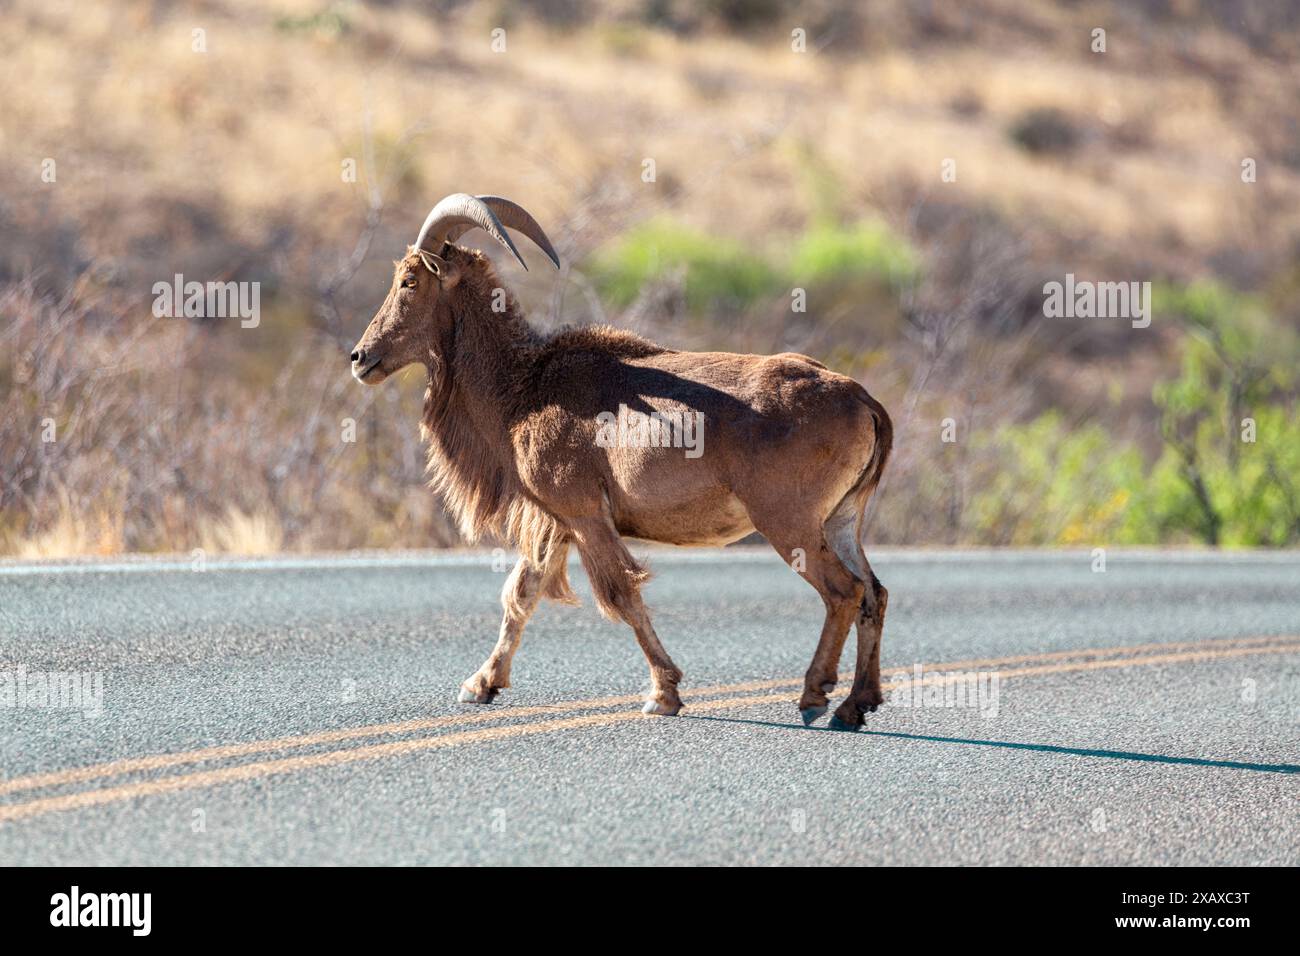 Moutons bighorn solo barbary traversant la route Banque D'Images